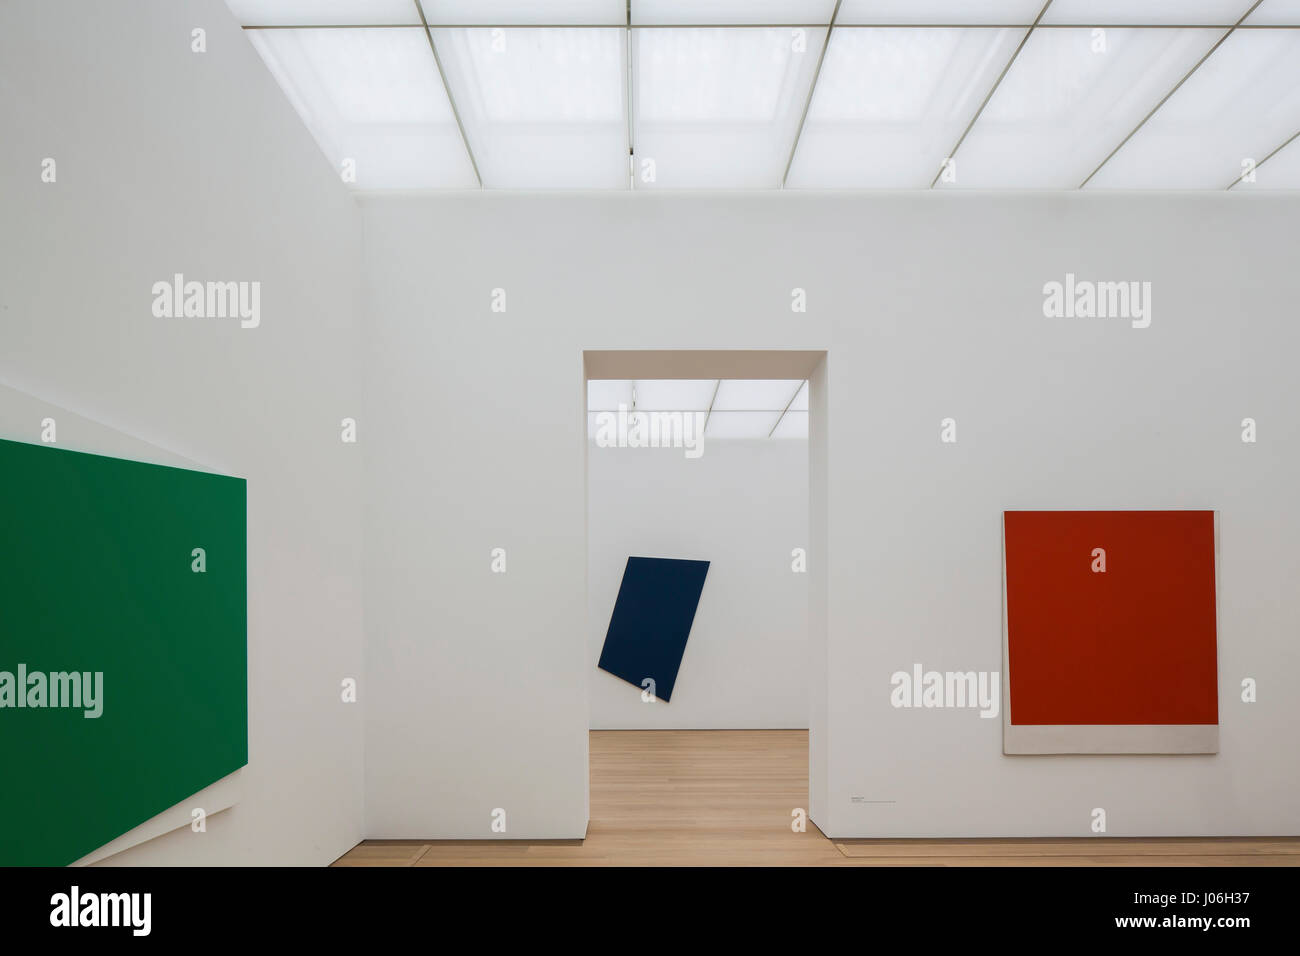 Ausstellung Räume mit Kunstwerken von Ellsworth Kelly. Museum Voorlinden, Wassenaar, Niederlande. Architekt: Kraaijvanger Architekten, 2016. Stockfoto